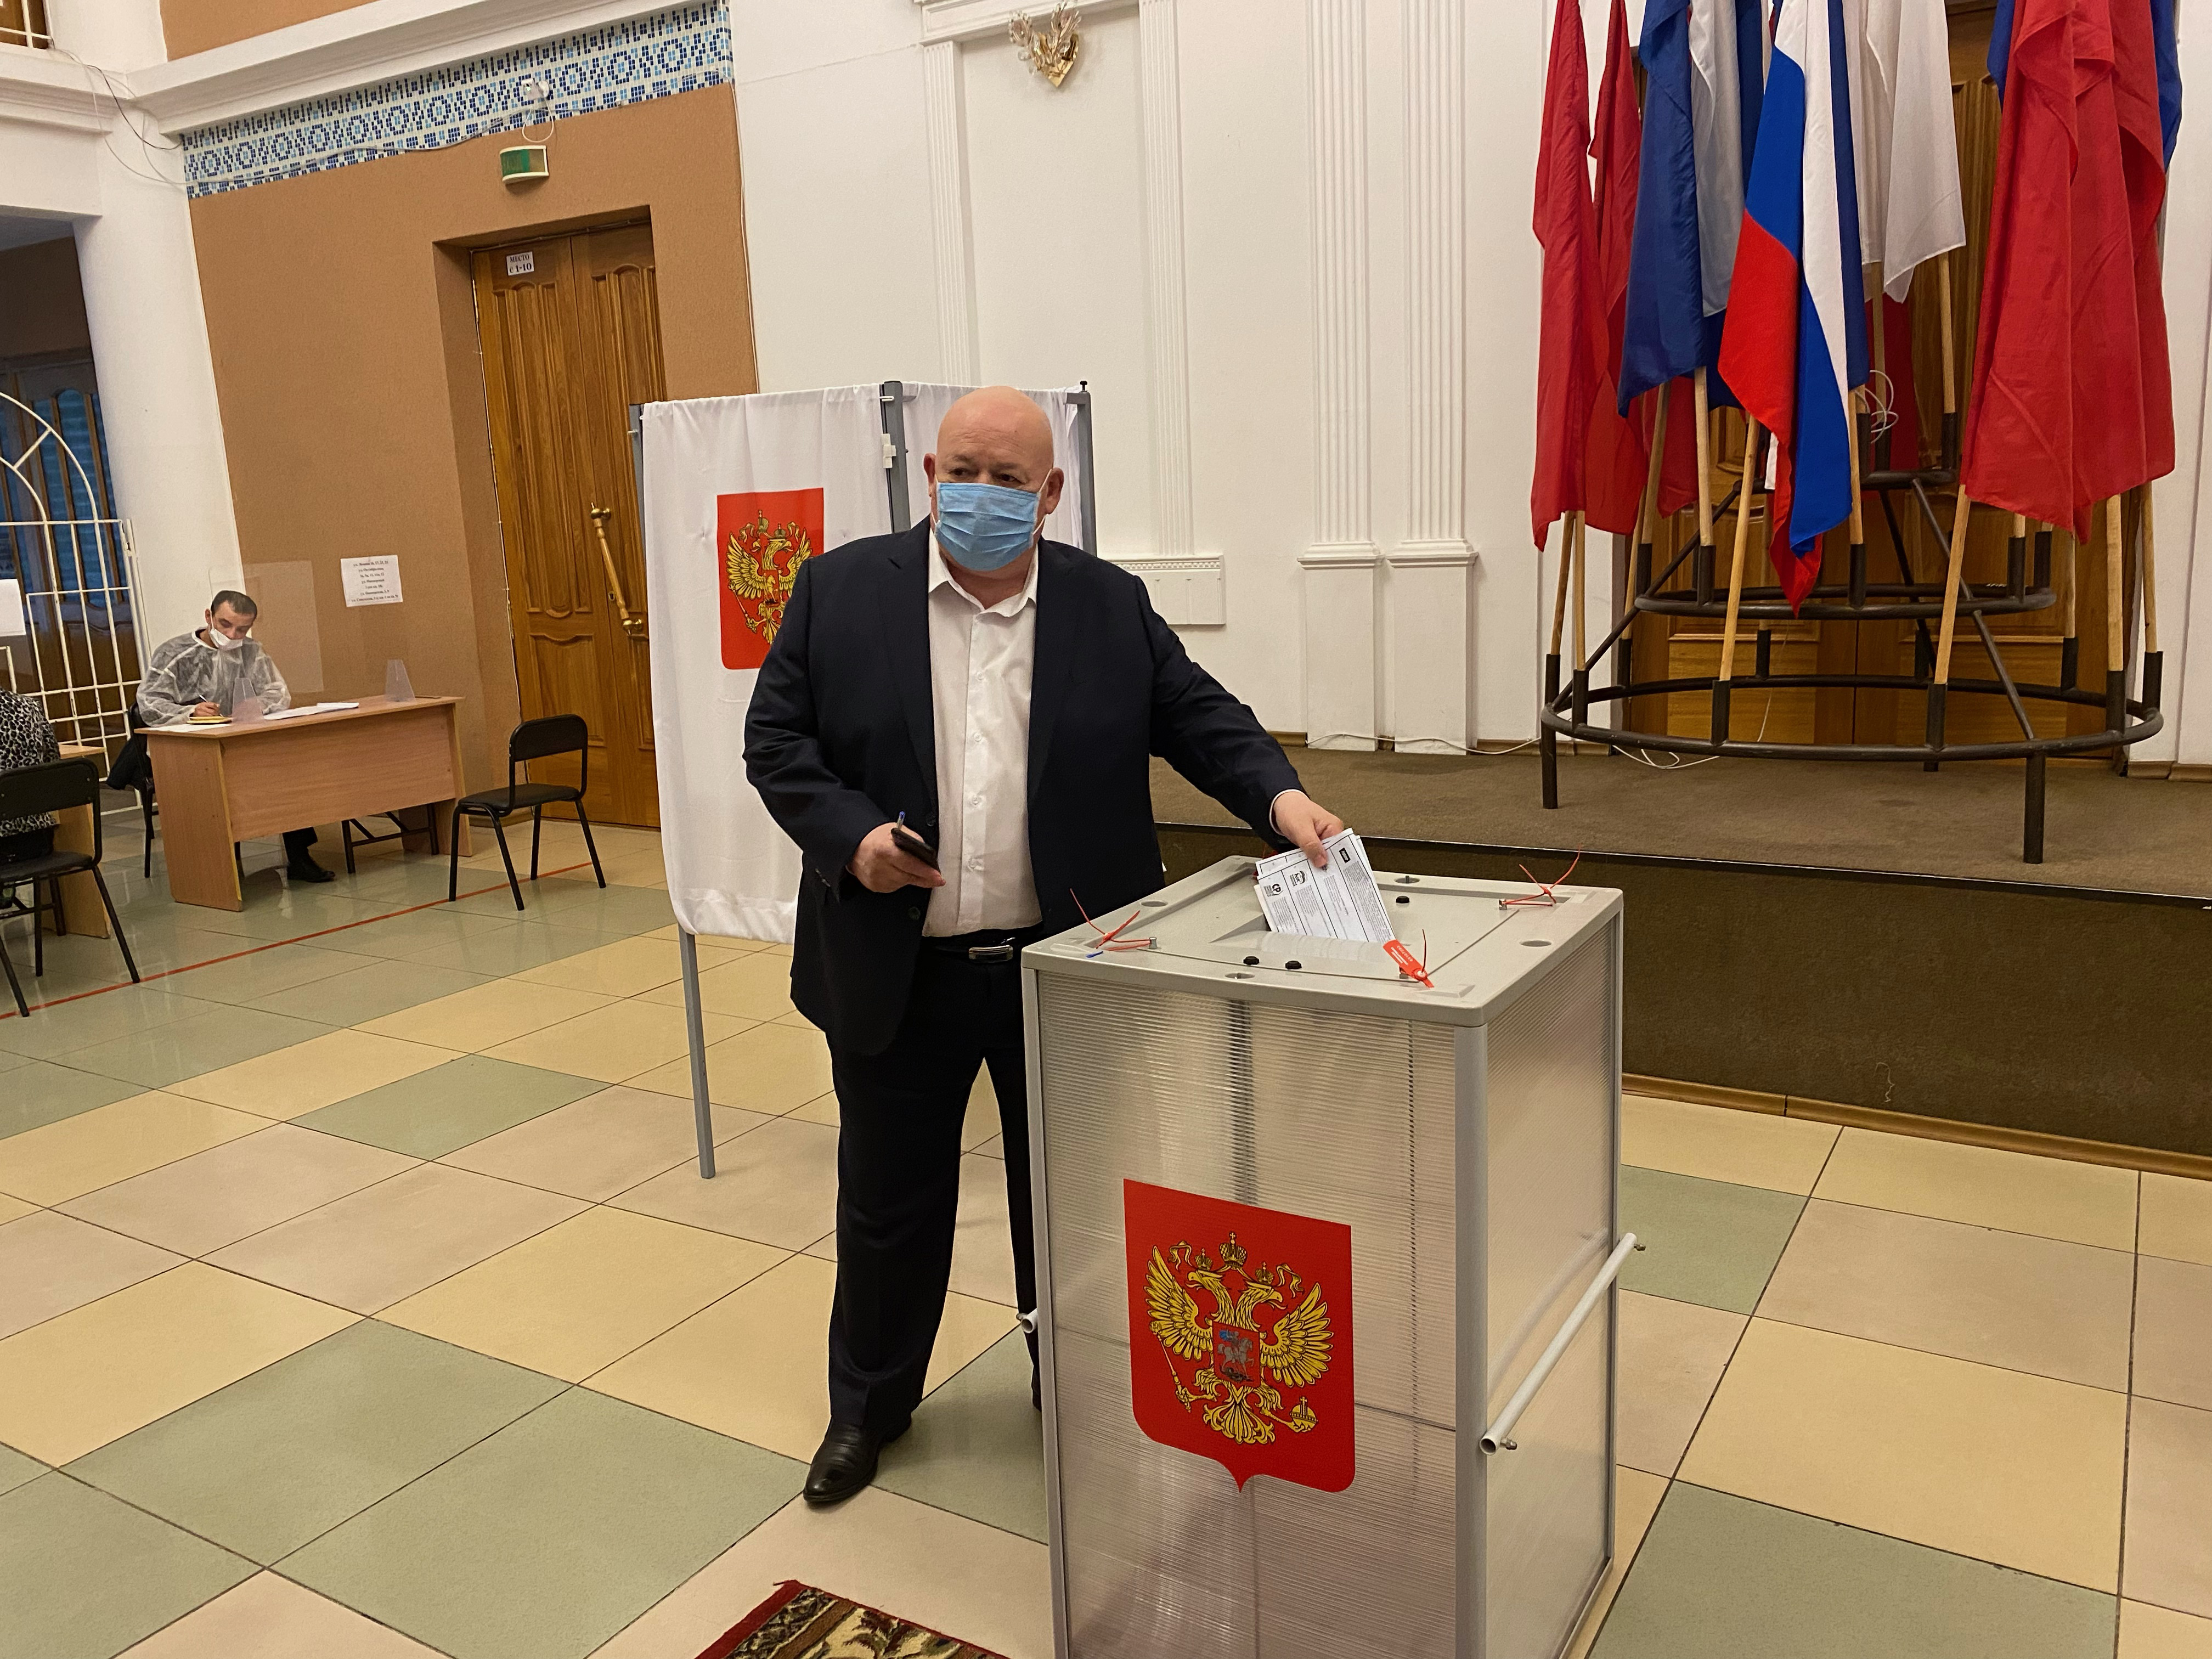 Анатолий Тихомиров проголосовал на избирательном участке